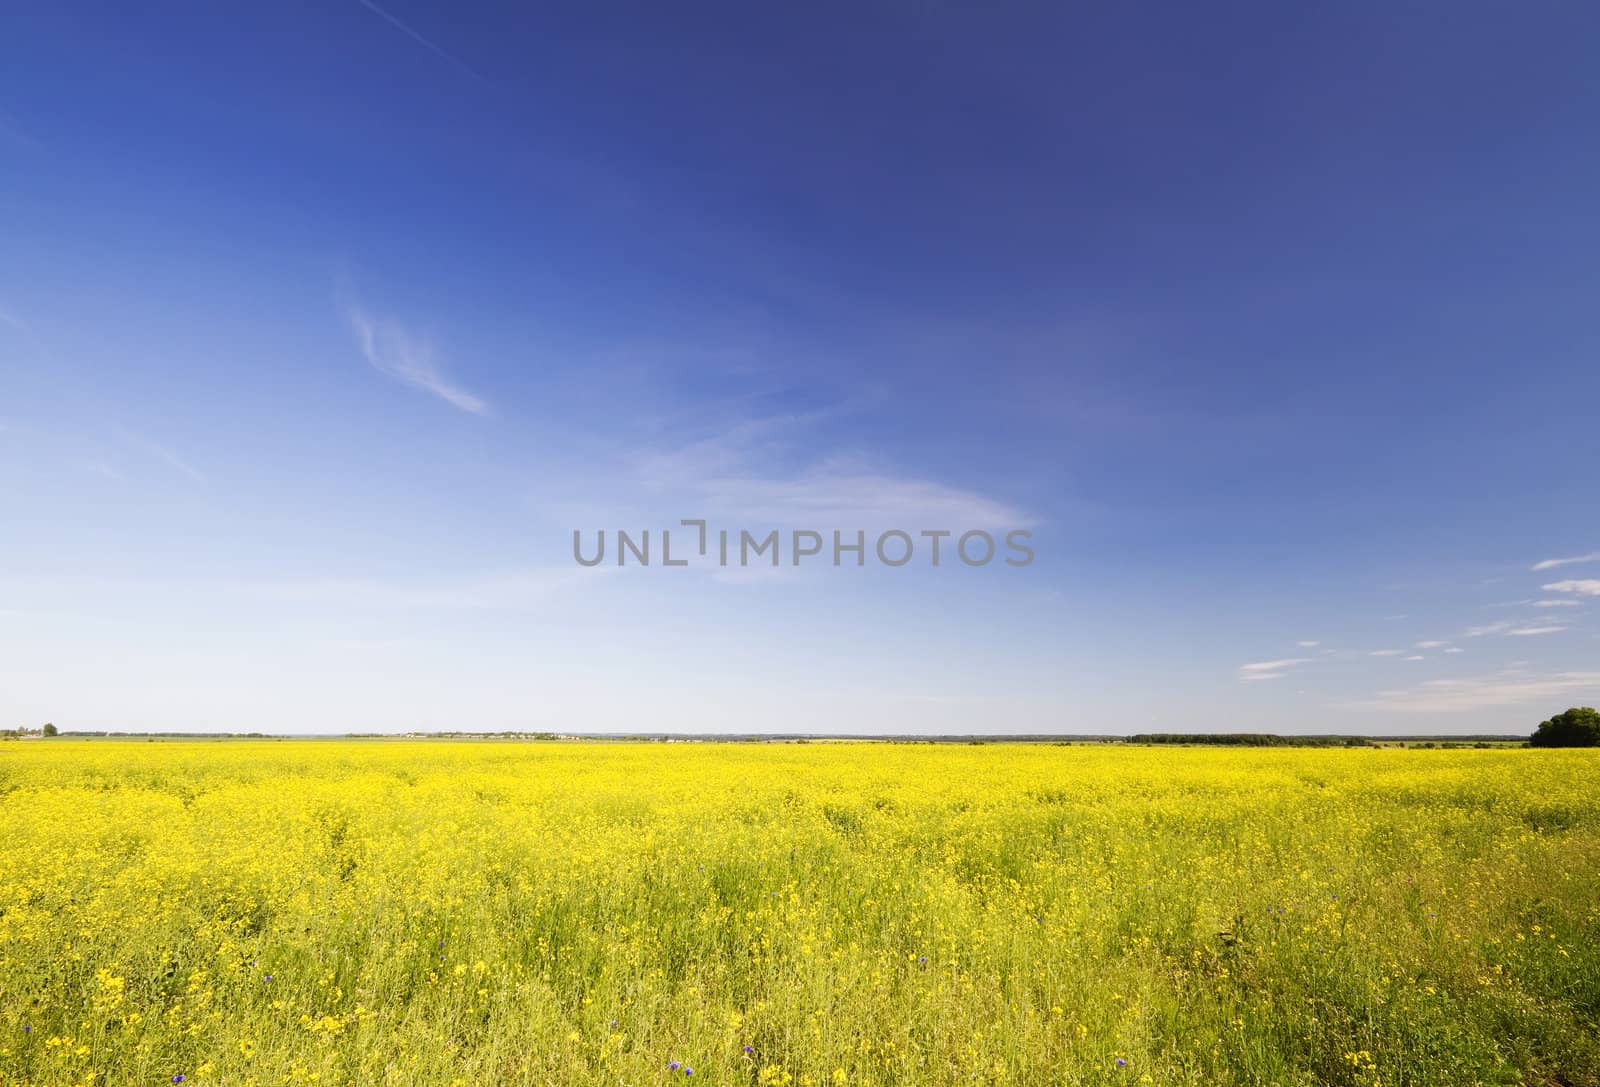 rapeseed field